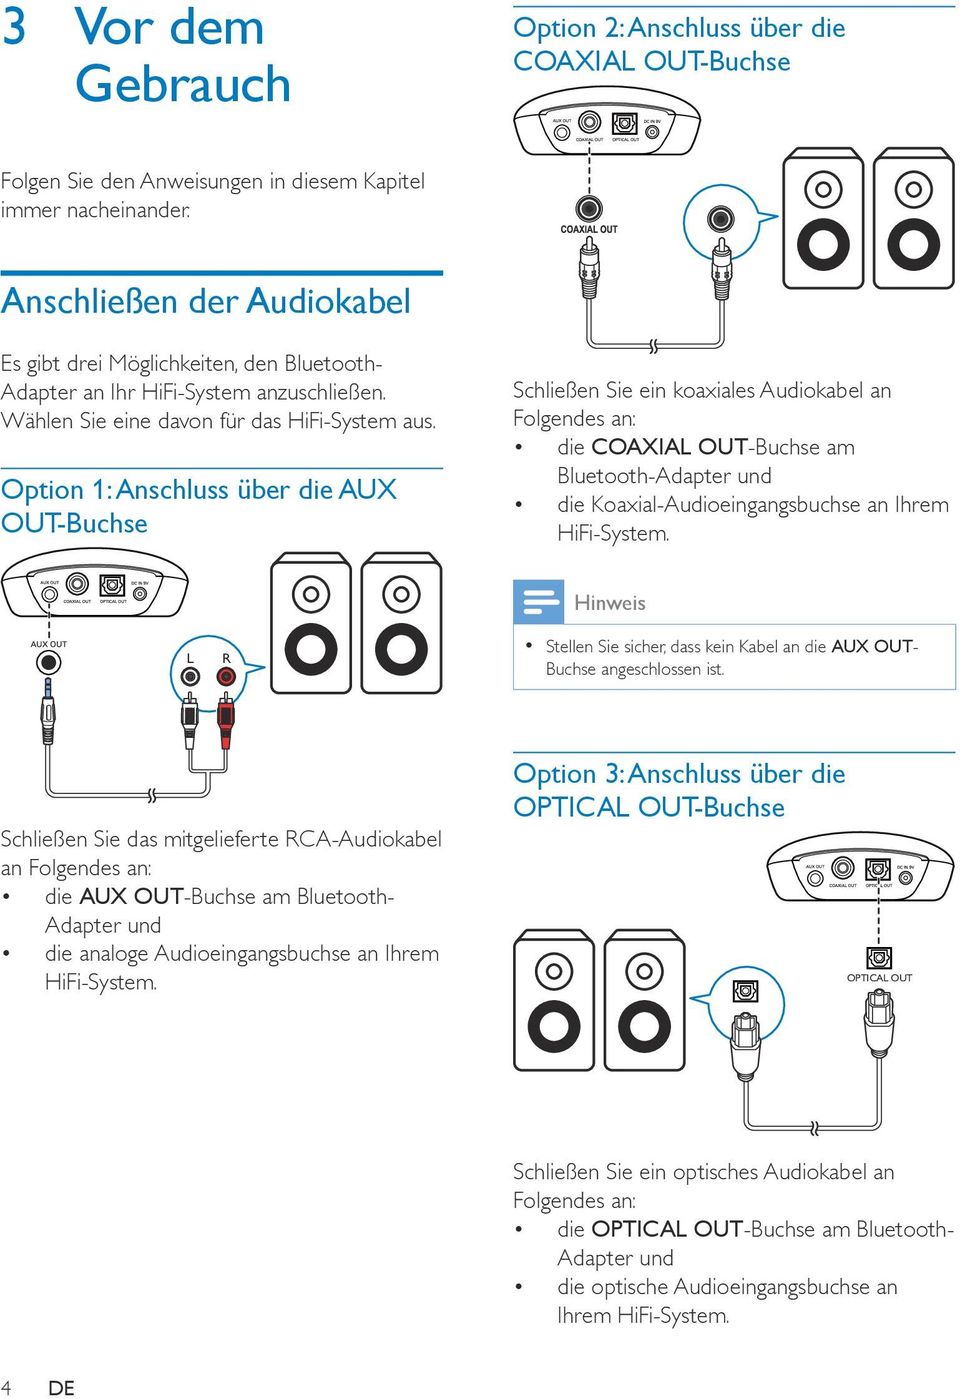 Option 1: Anschluss über die AUX OUT-Buchse Schließen Sie ein koaxiales Audiokabel an Folgendes an: die COAXIAL OUT-Buchse am Bluetooth-Adapter und die Koaxial-Audioeingangsbuchse an Ihrem